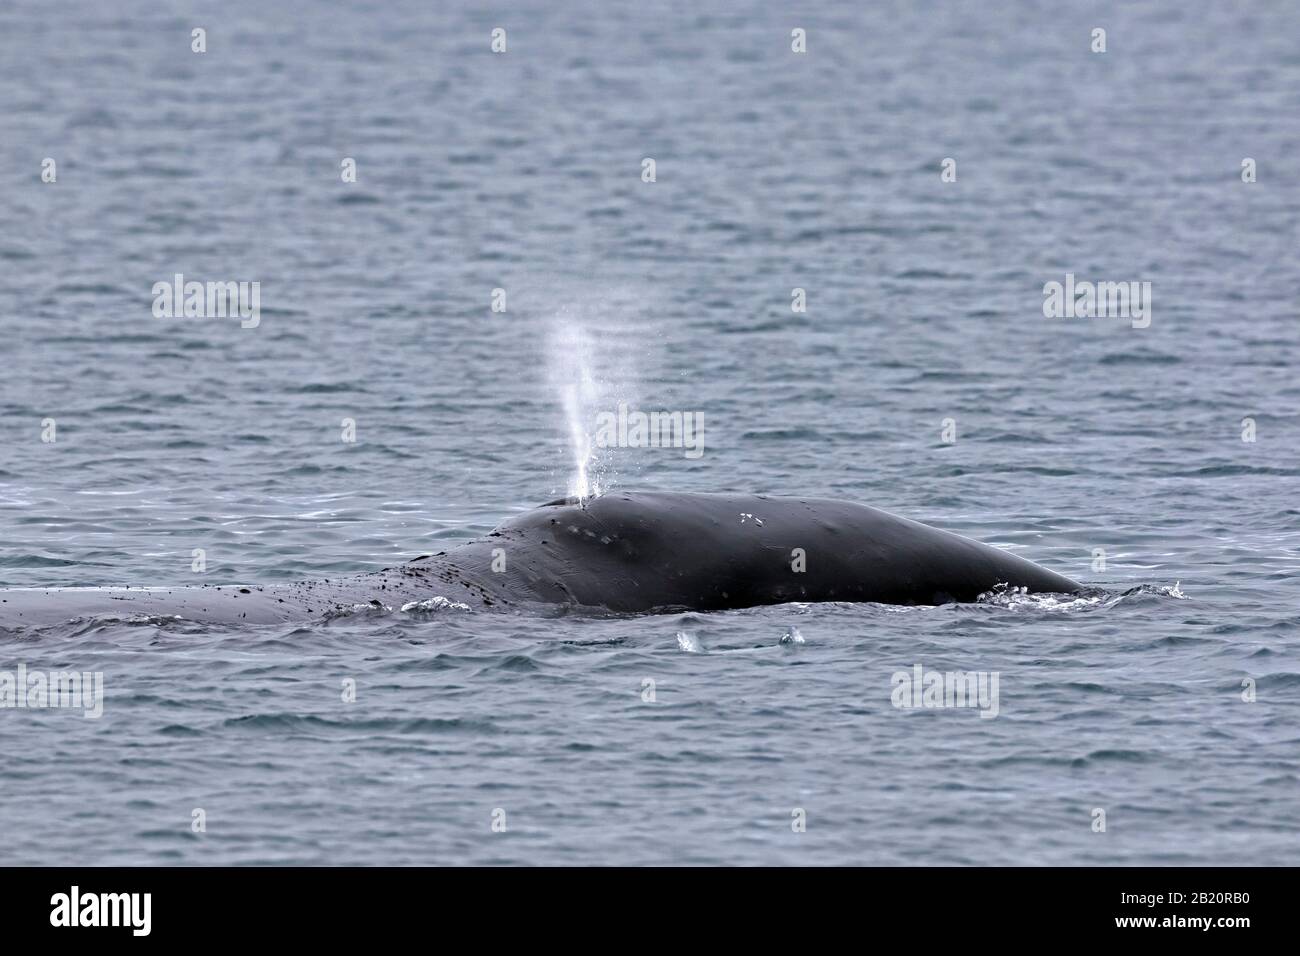 Soffia attraverso la macchia di balena di bollo (Balaena mysticetus) che si affaccia l'Oceano Artico, Svalbard / Spitsbergen, Norvegia Foto Stock